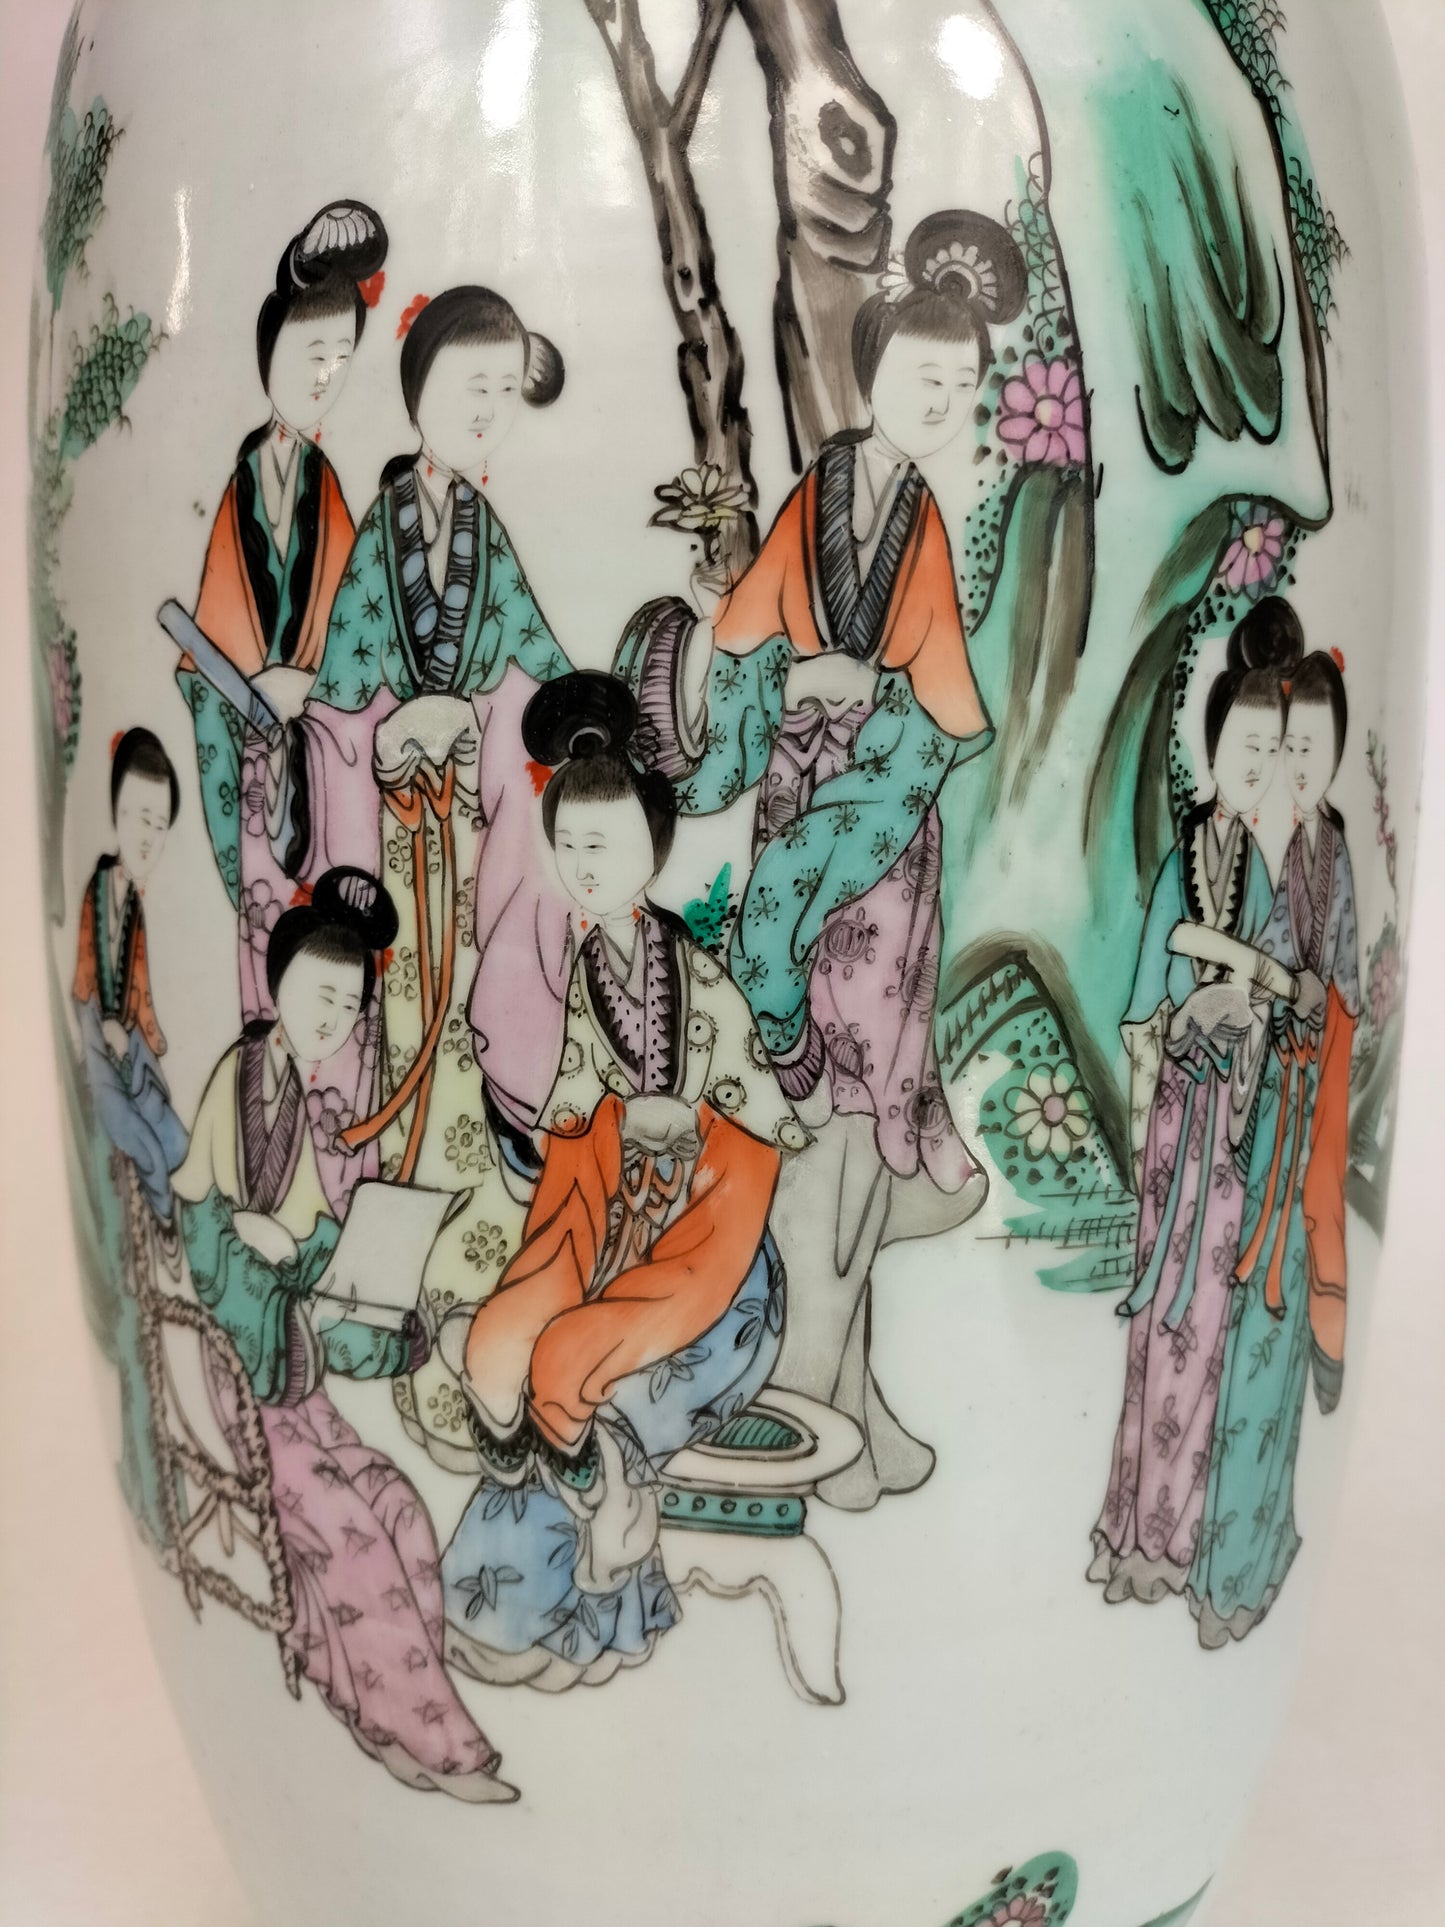 Grande vaso chinês antigo qianjiang decorado com cena de jardim // Período da República (1912-1949)